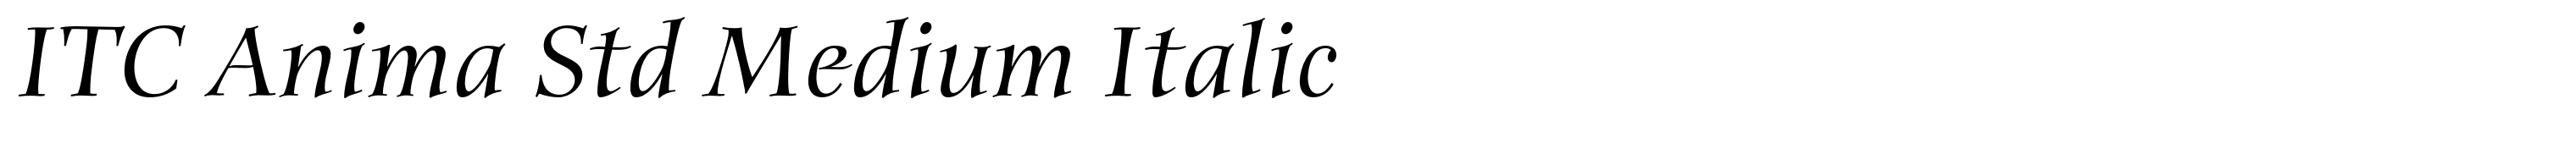 ITC Anima Std Medium Italic